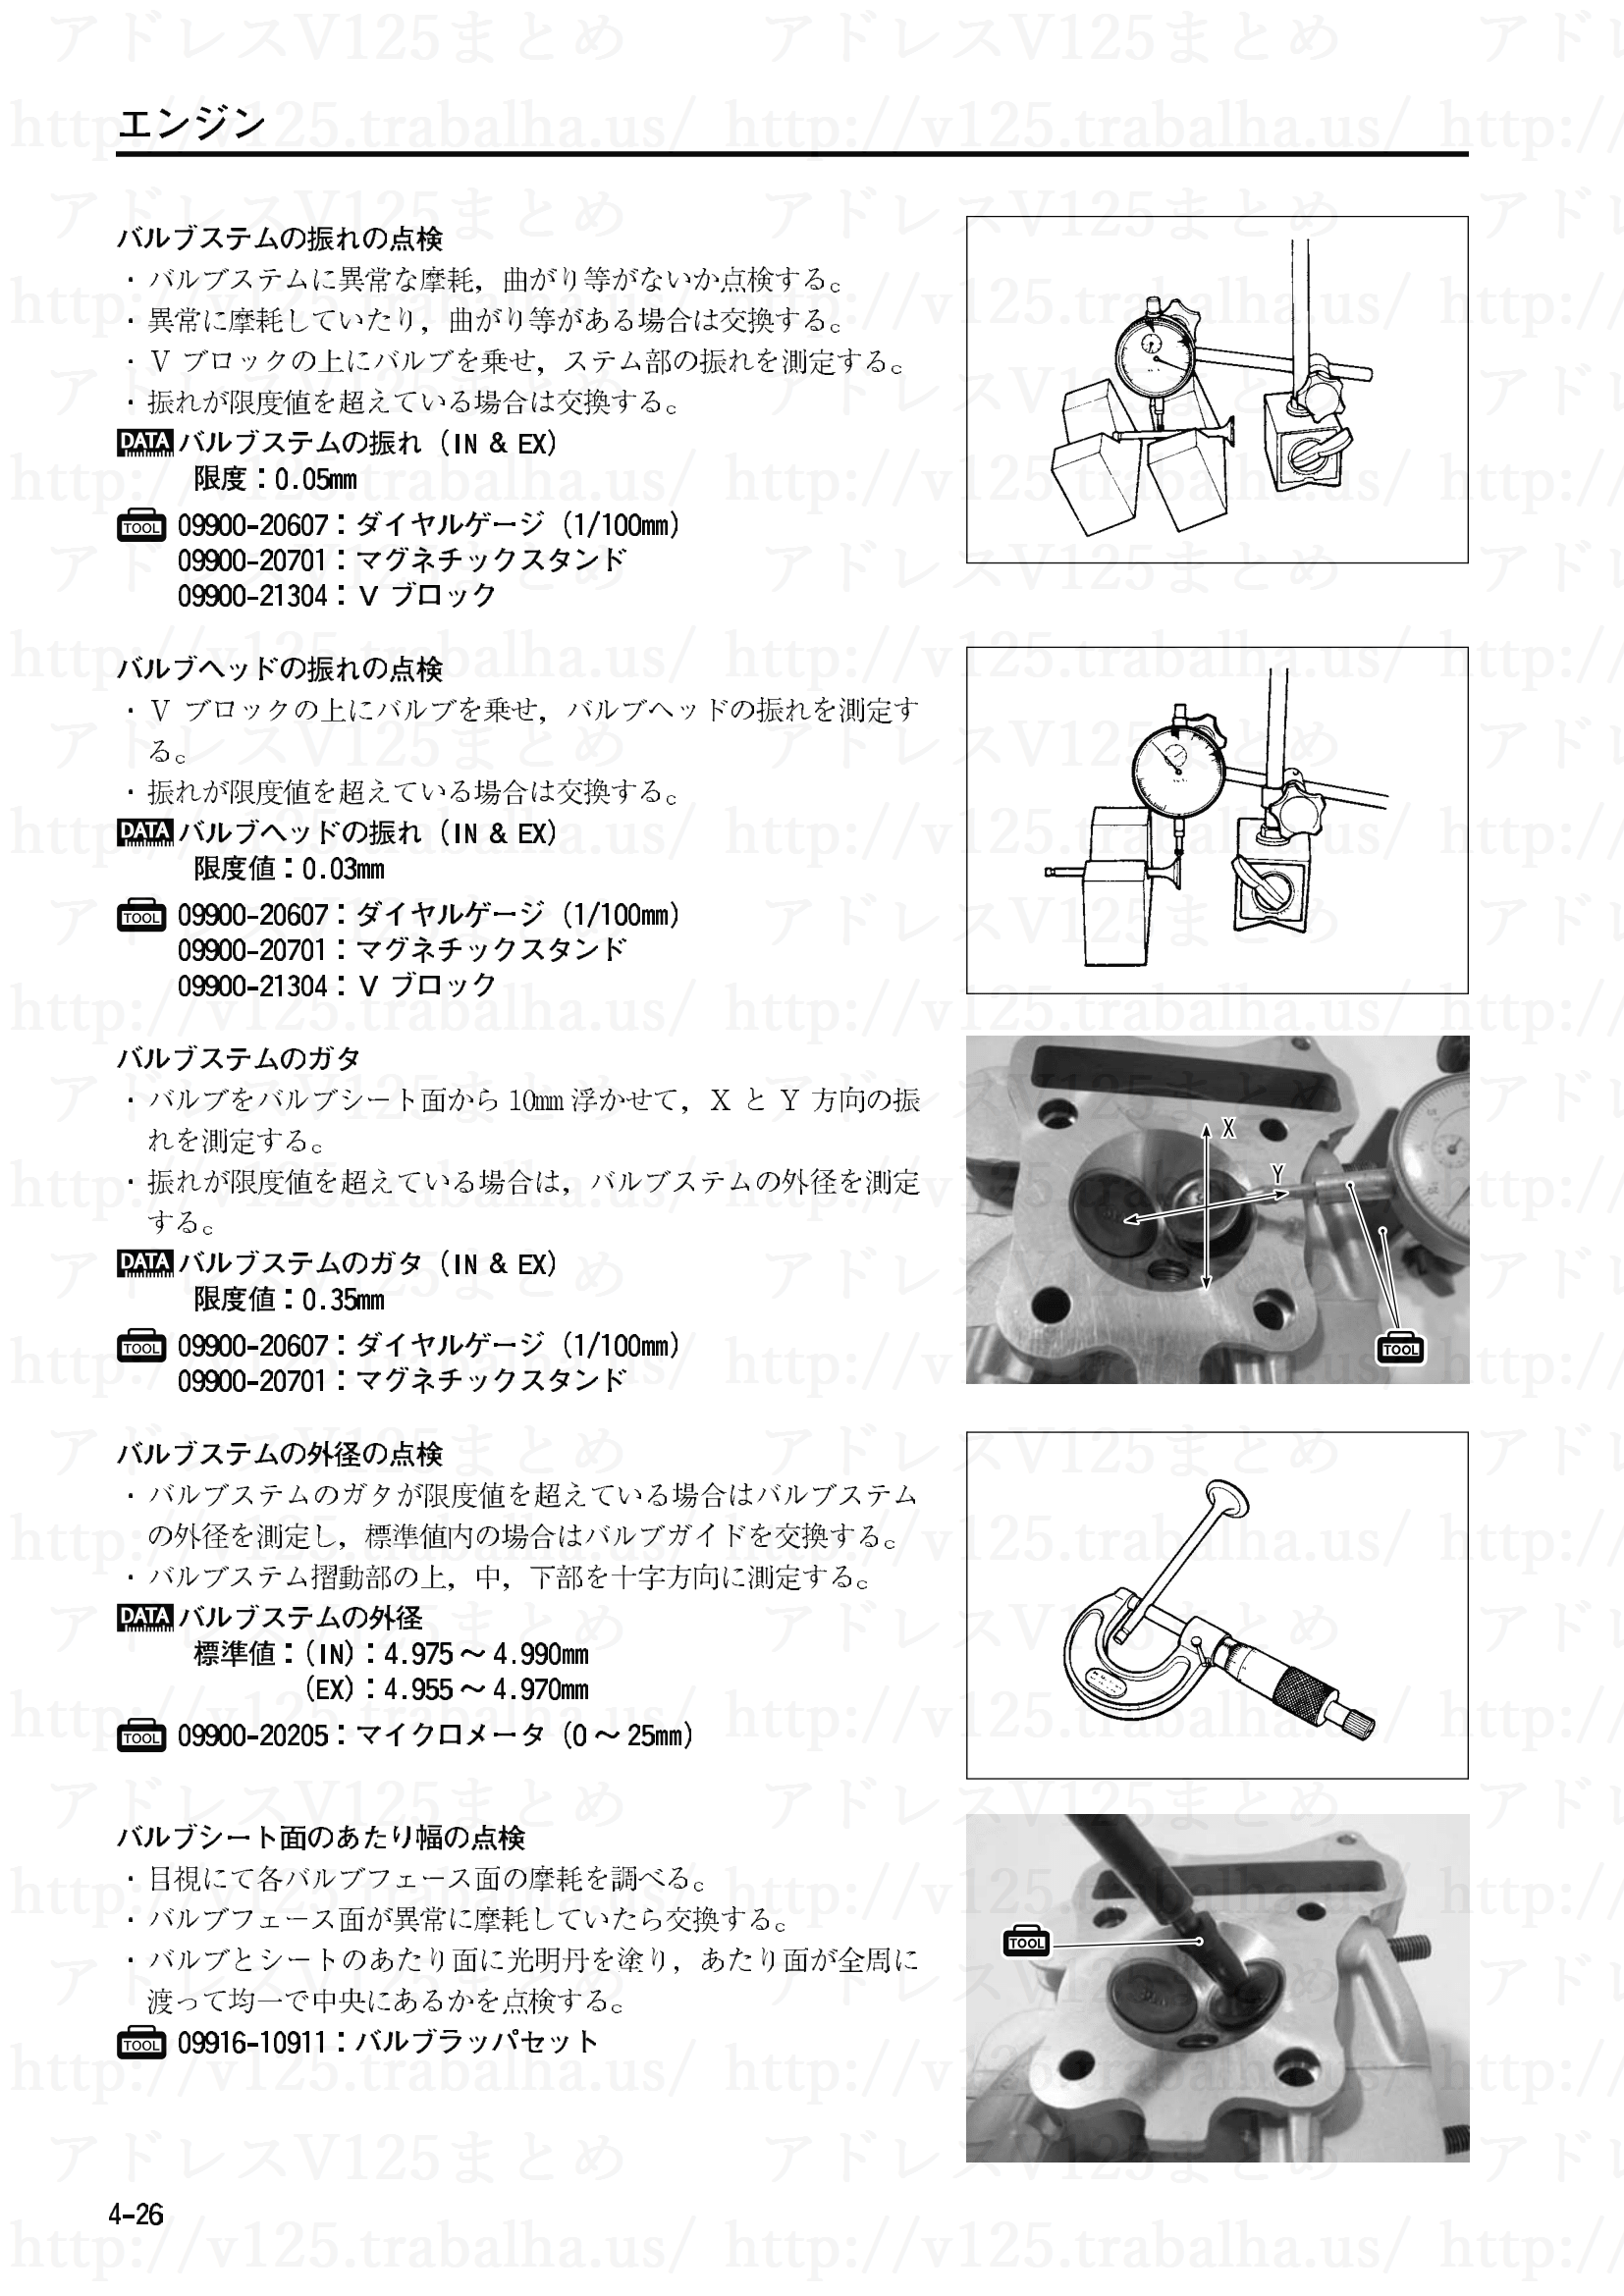 4-26【エンジン】エンジン部組部品の点検4